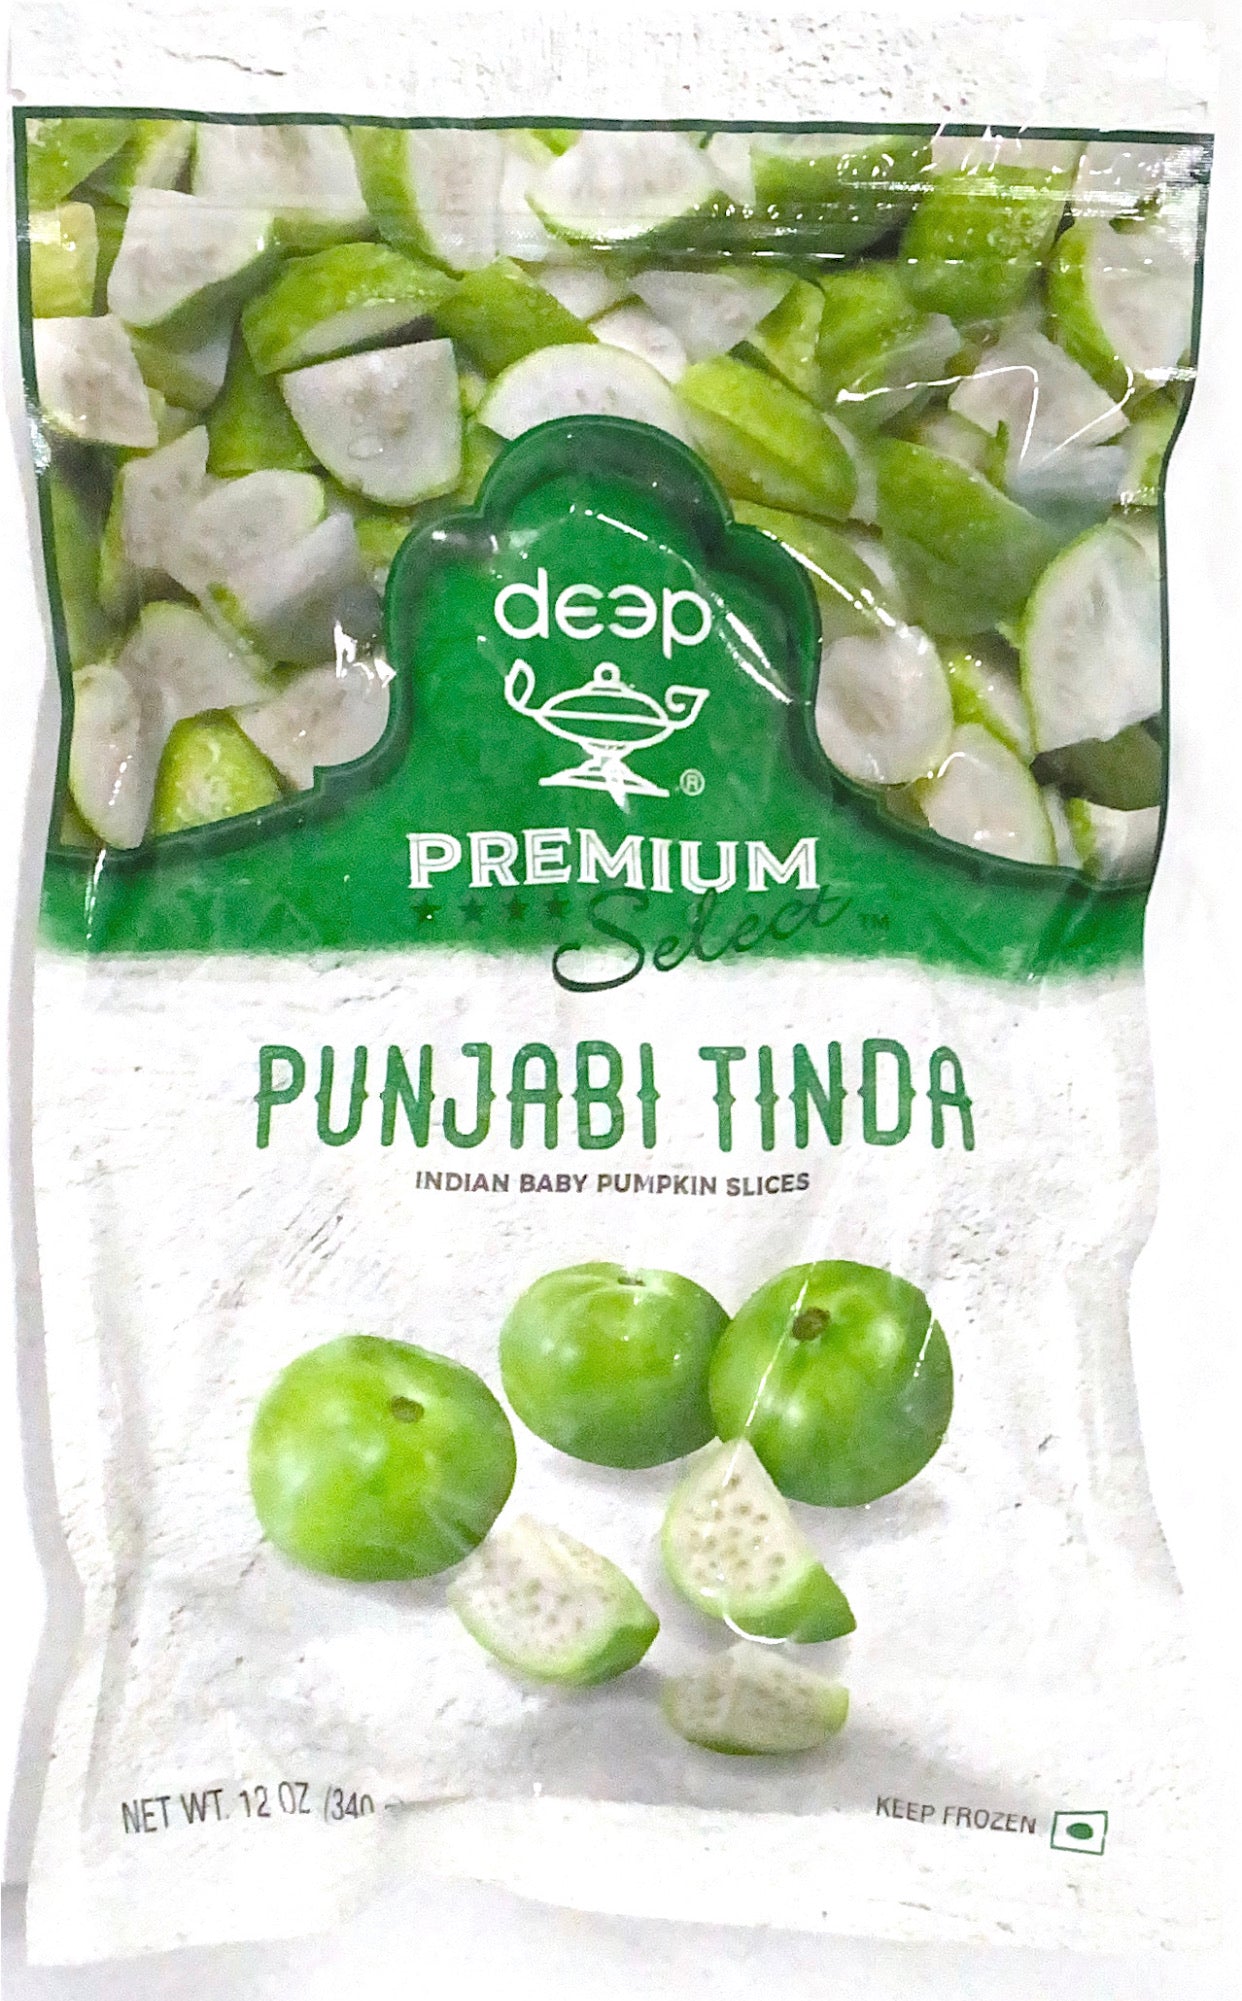 Punjabi Tinda